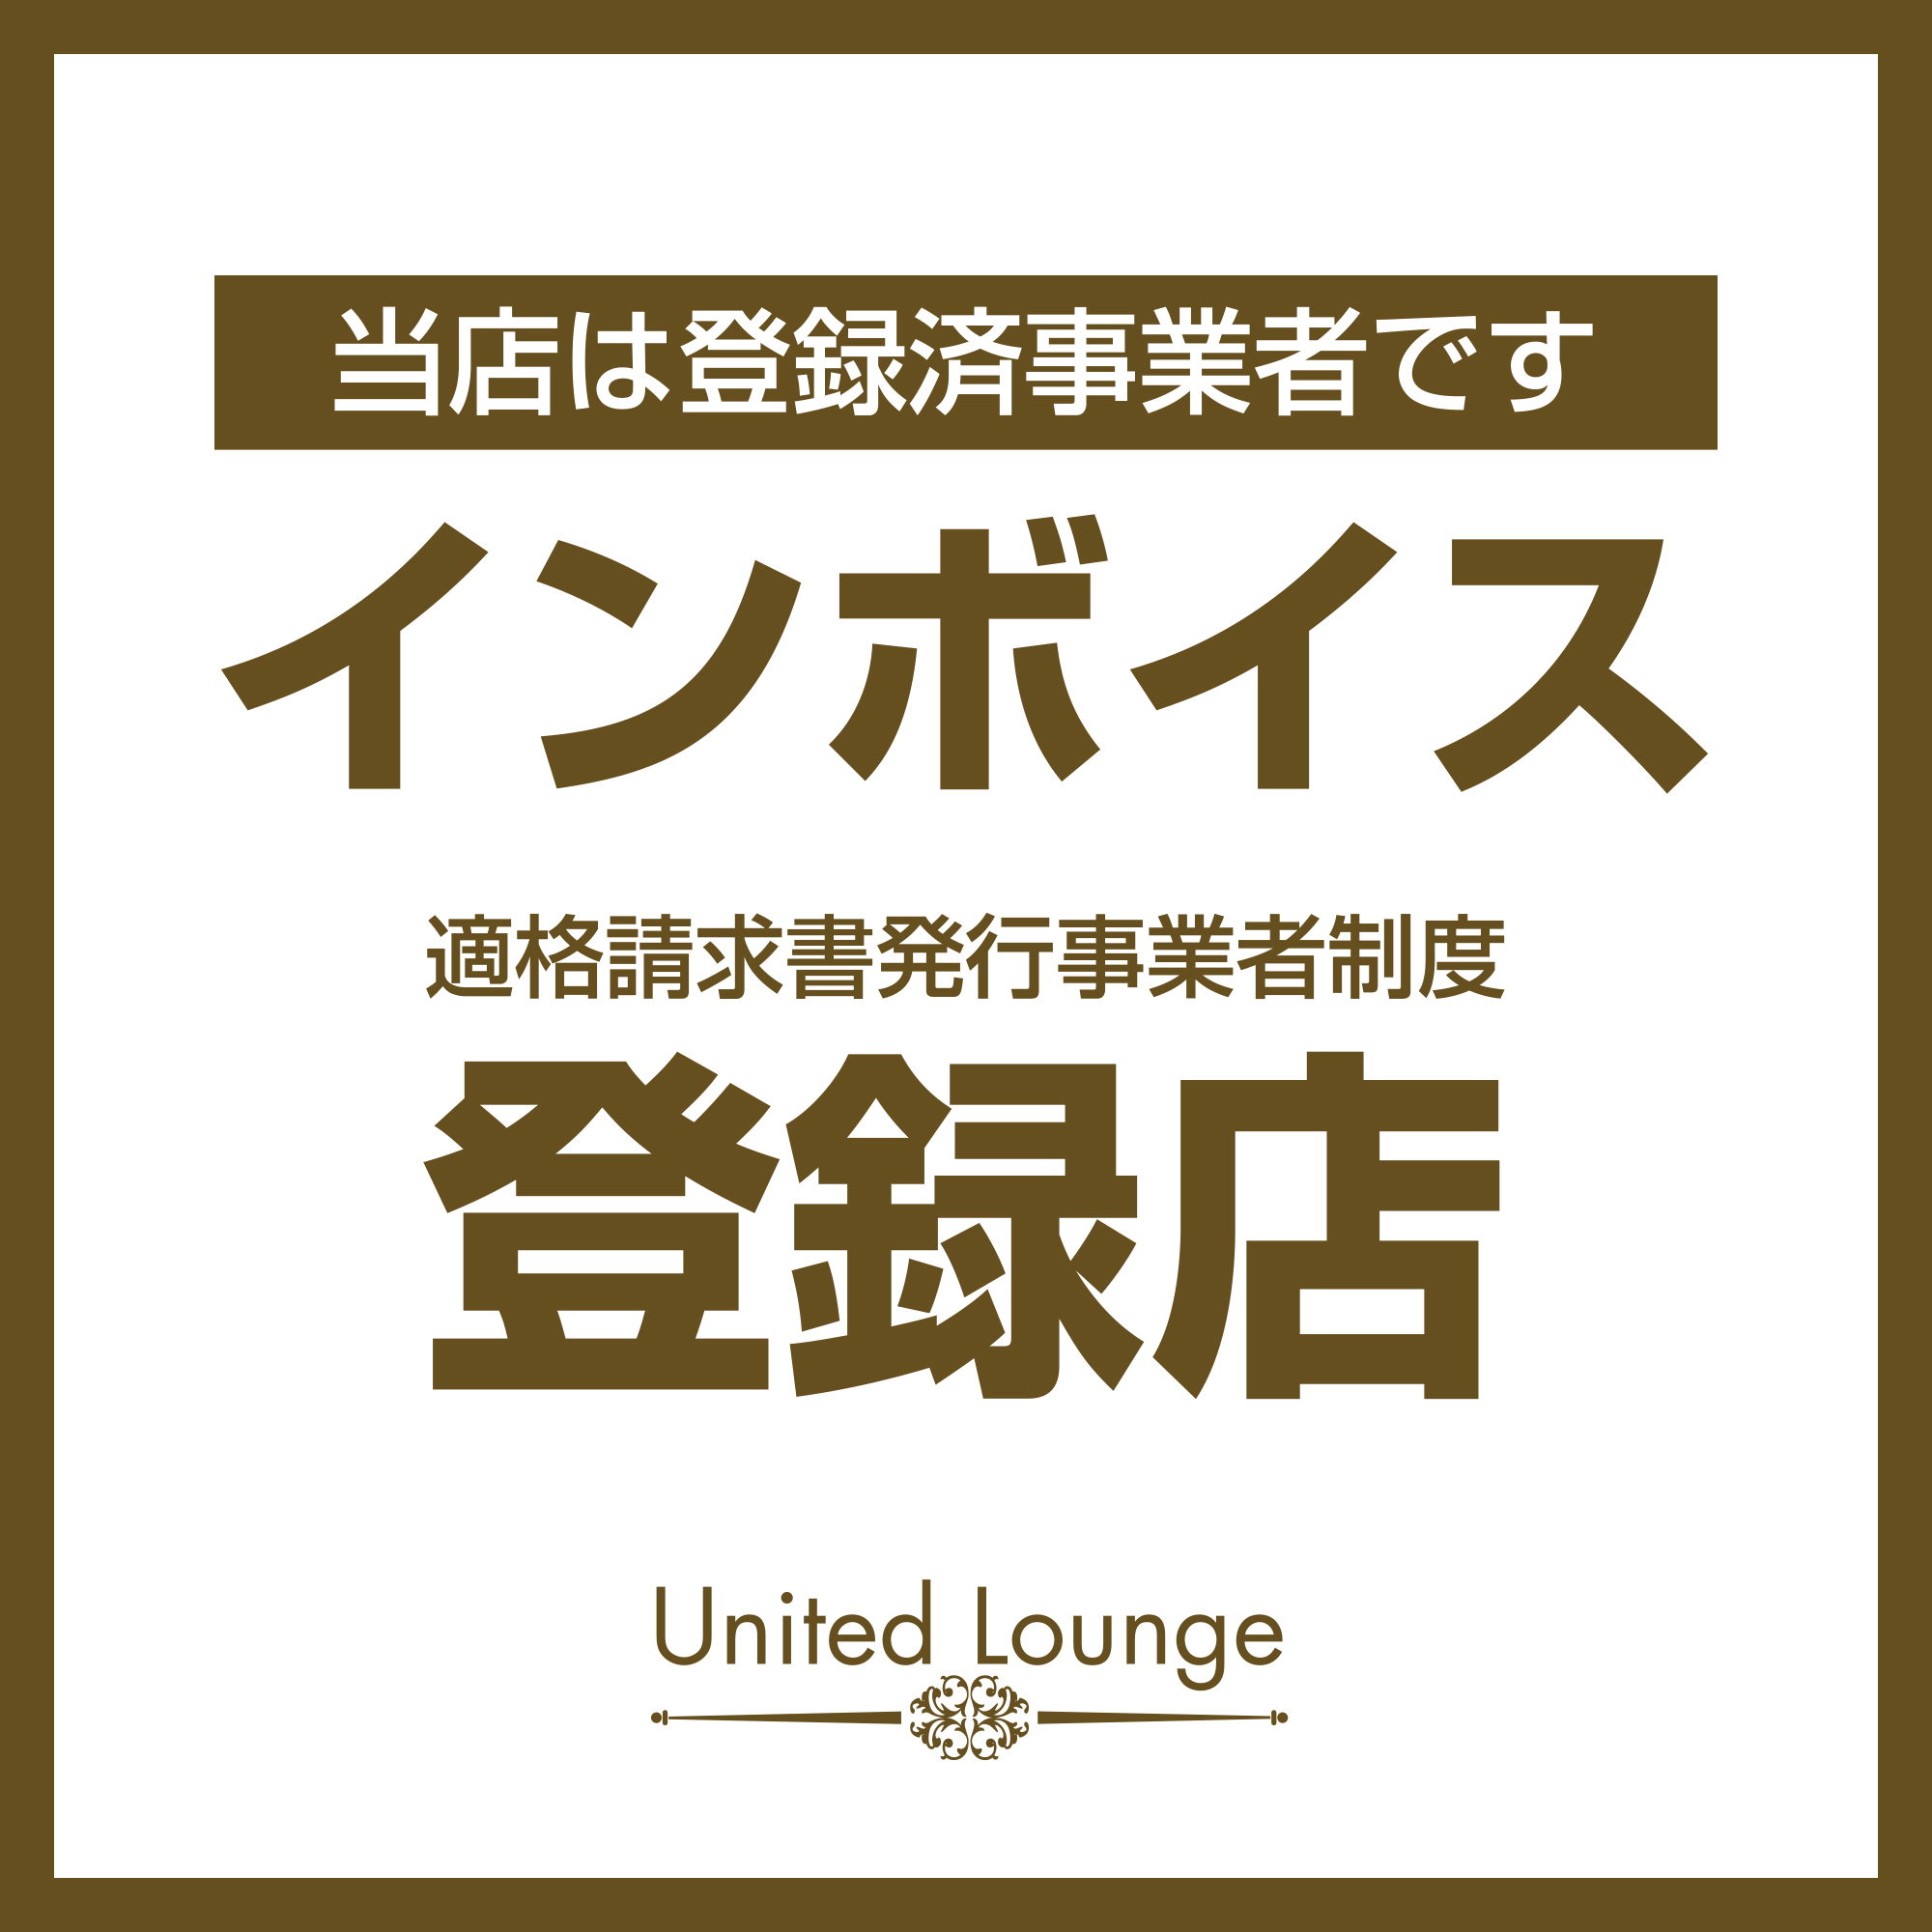 館林 キャバクラ「United Lounge」ショップニュース